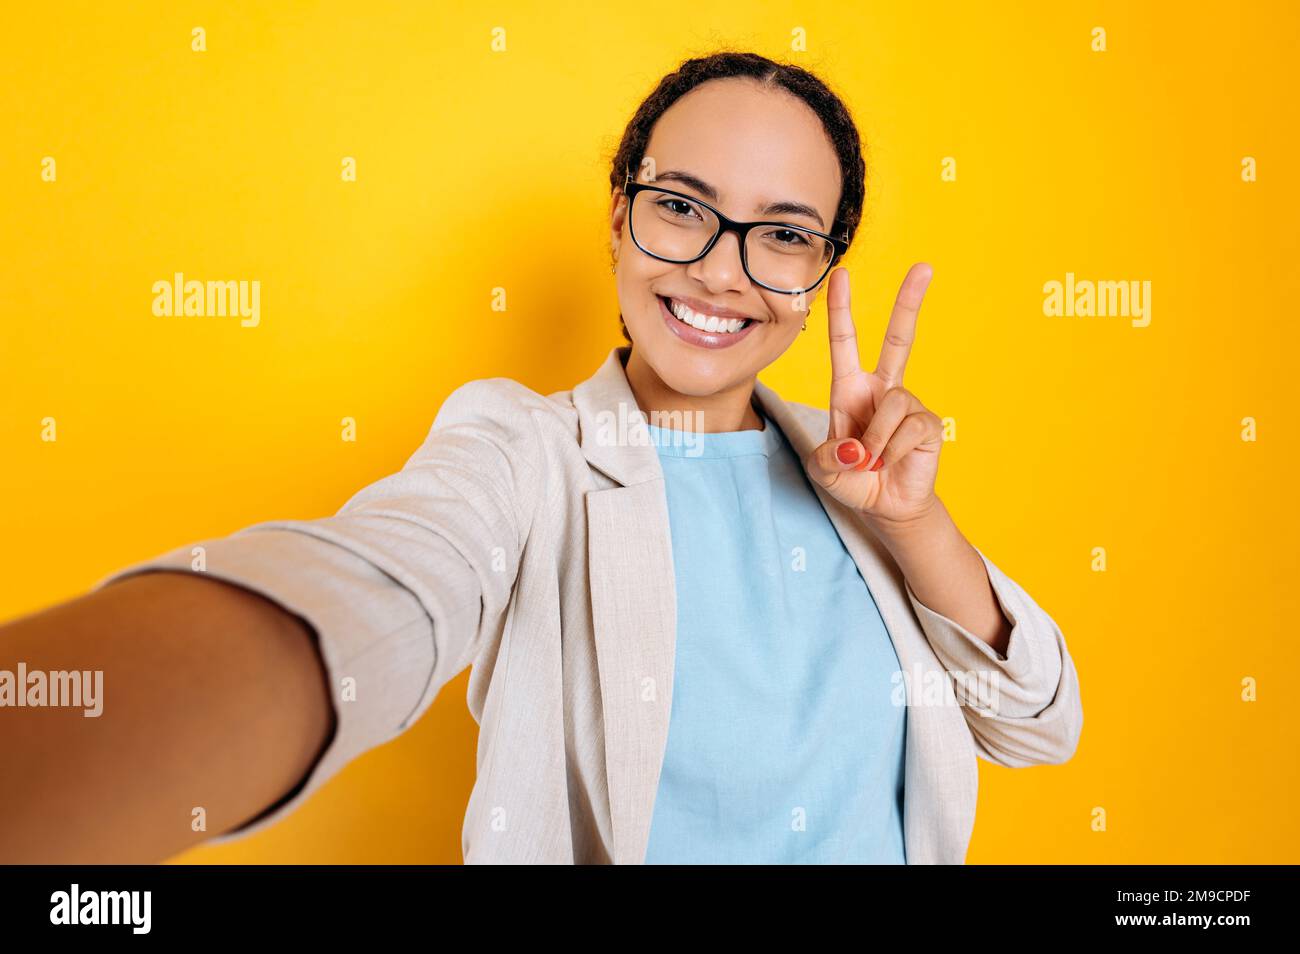 Hübsche, positiv charismatische hispanische oder brasilianische Frau mit Brille, macht ein Selfie-Foto auf ihrem Smartphone, schaut in die Kamera, lächelt, zeigt Frieden mit ihren Fingern, gelber isolierter Hintergrund Stockfoto